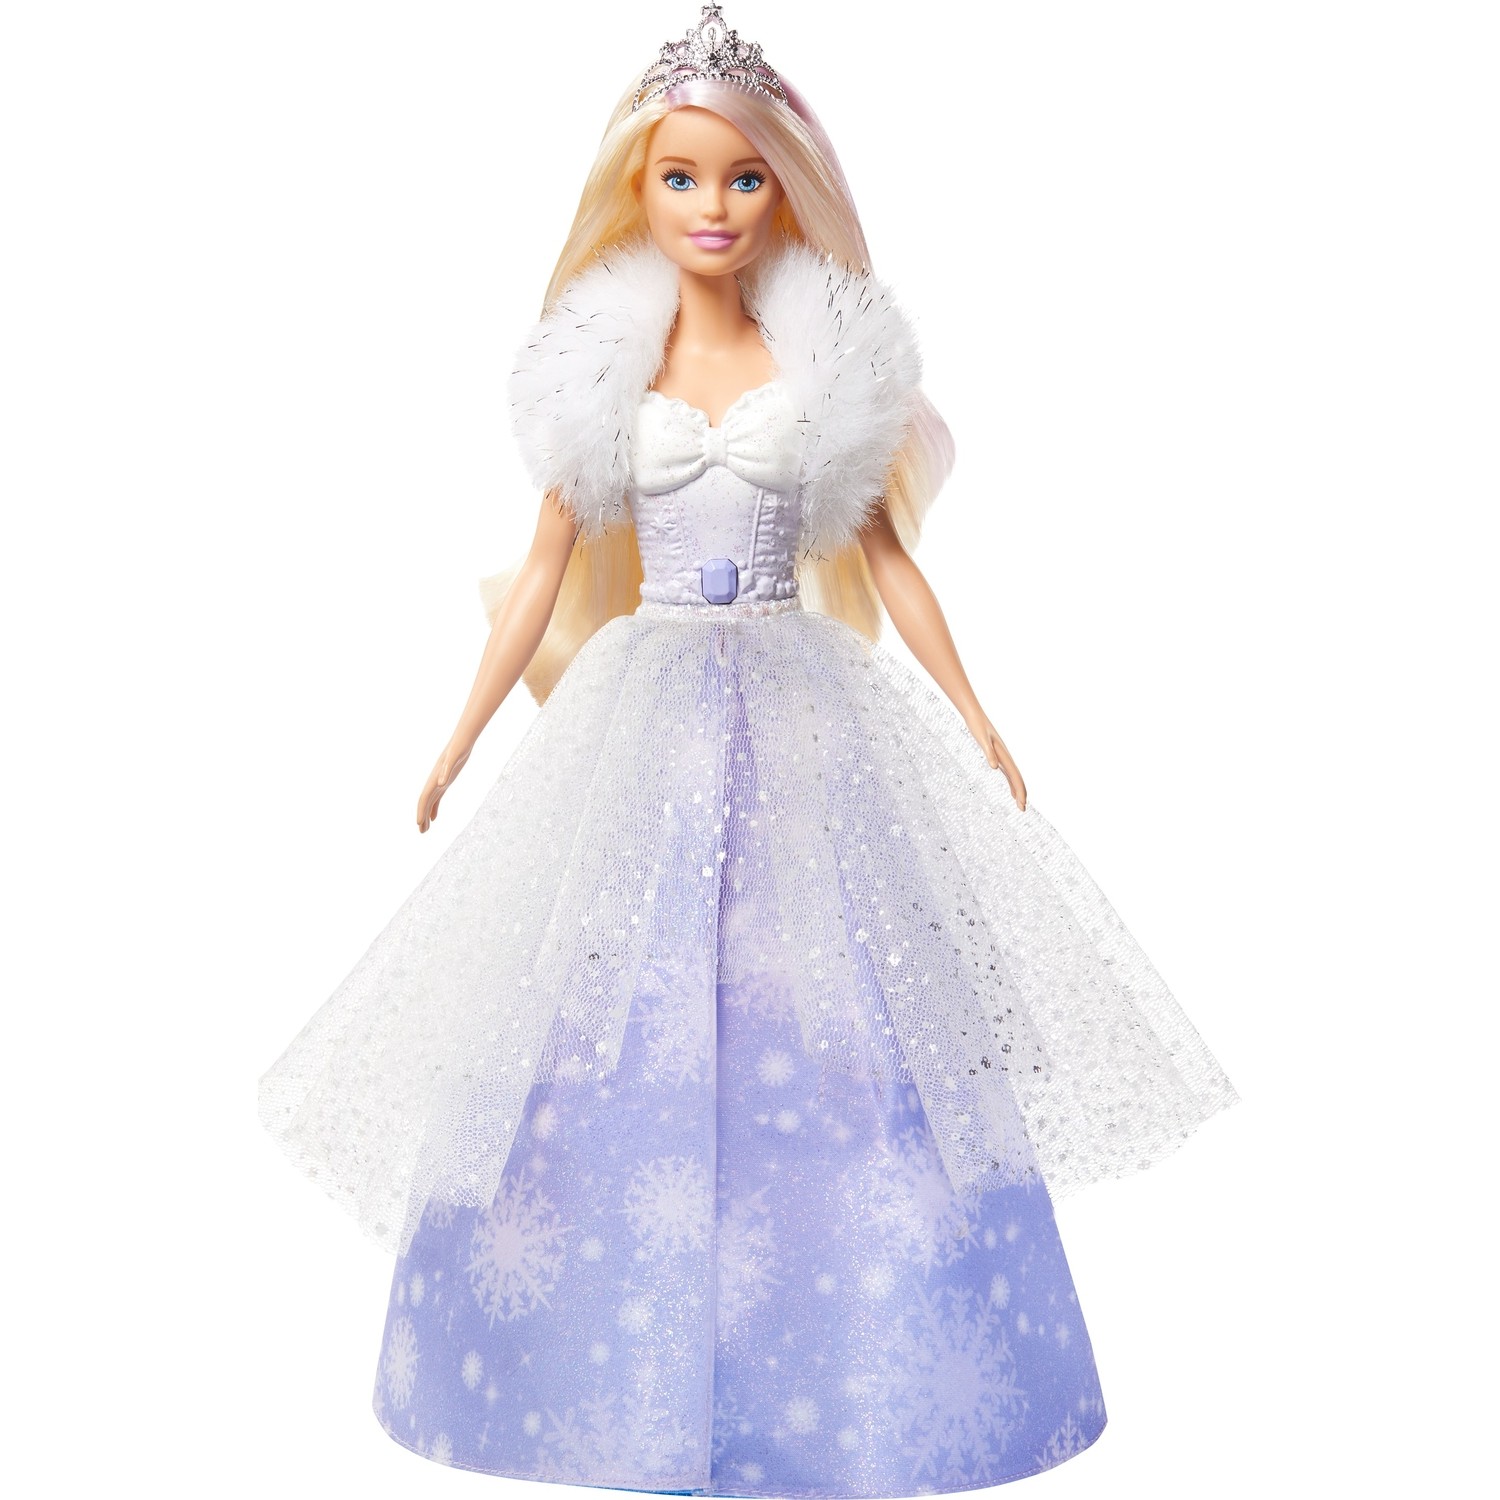 кукла barbie снежная принцесса gkh26 Кукла Barbie Dreamtopia Snow Princess, желтые волосы Gkh26